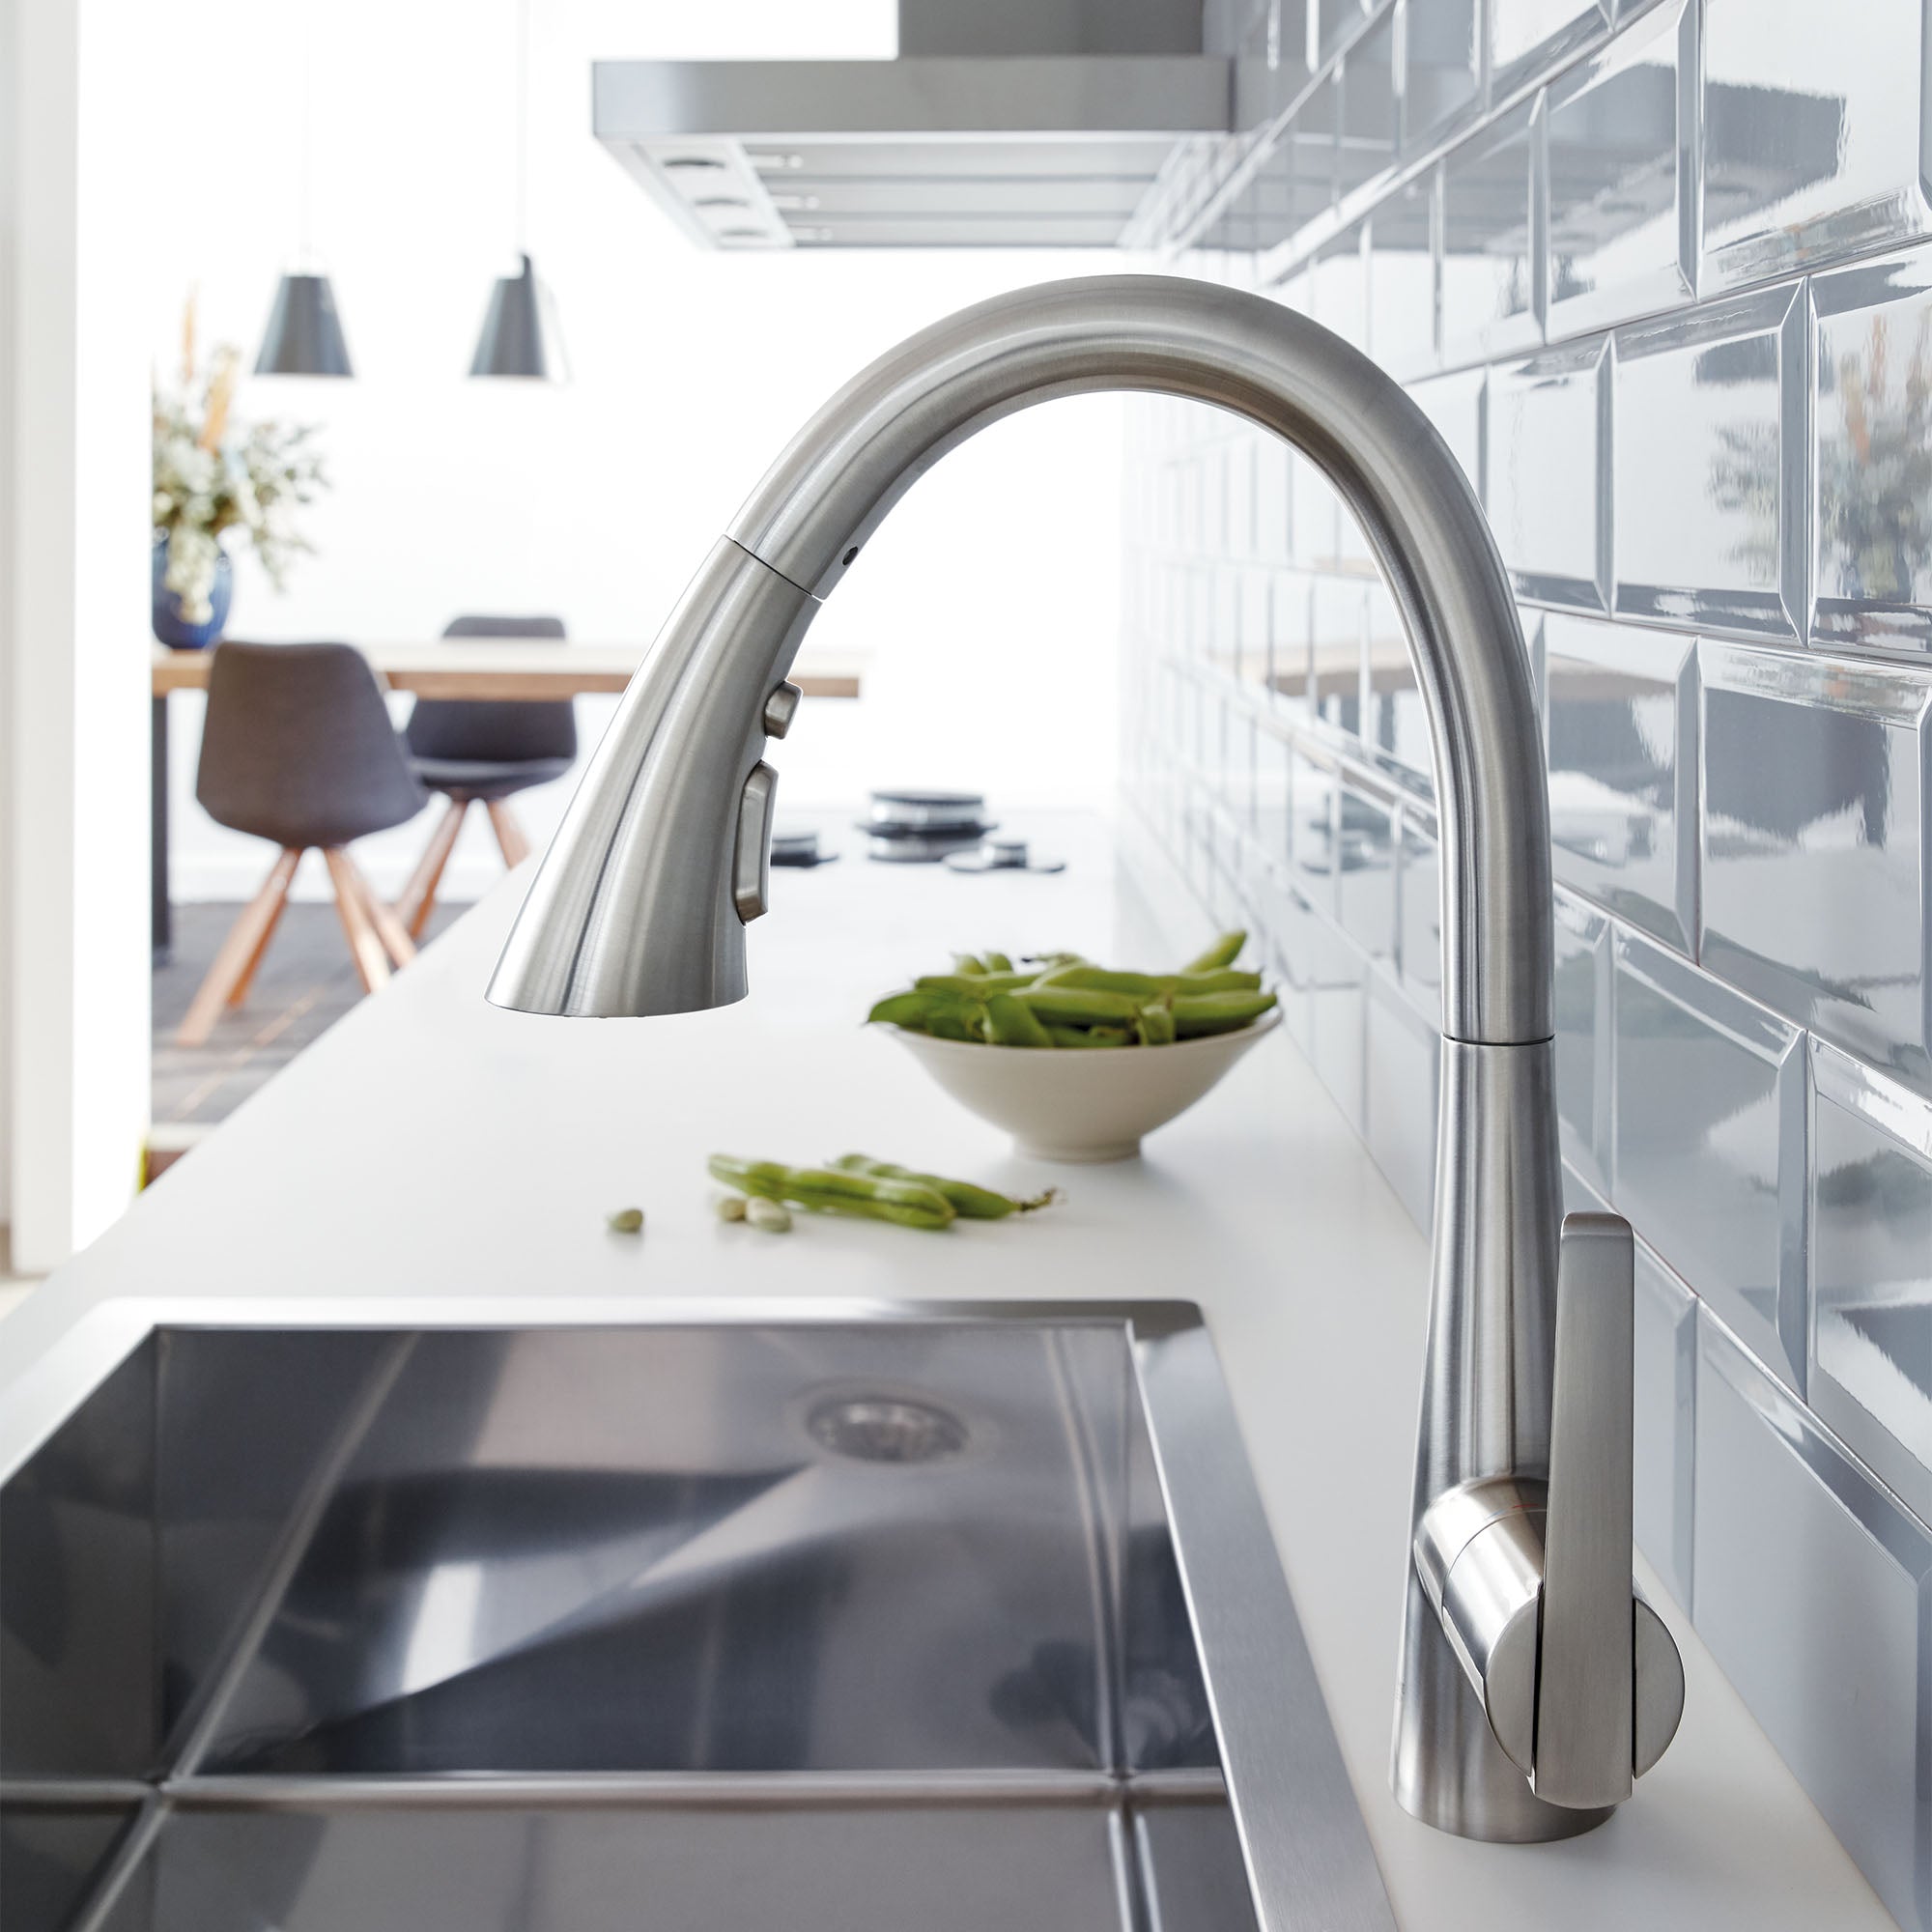 supersteel infinity kitchen faucet